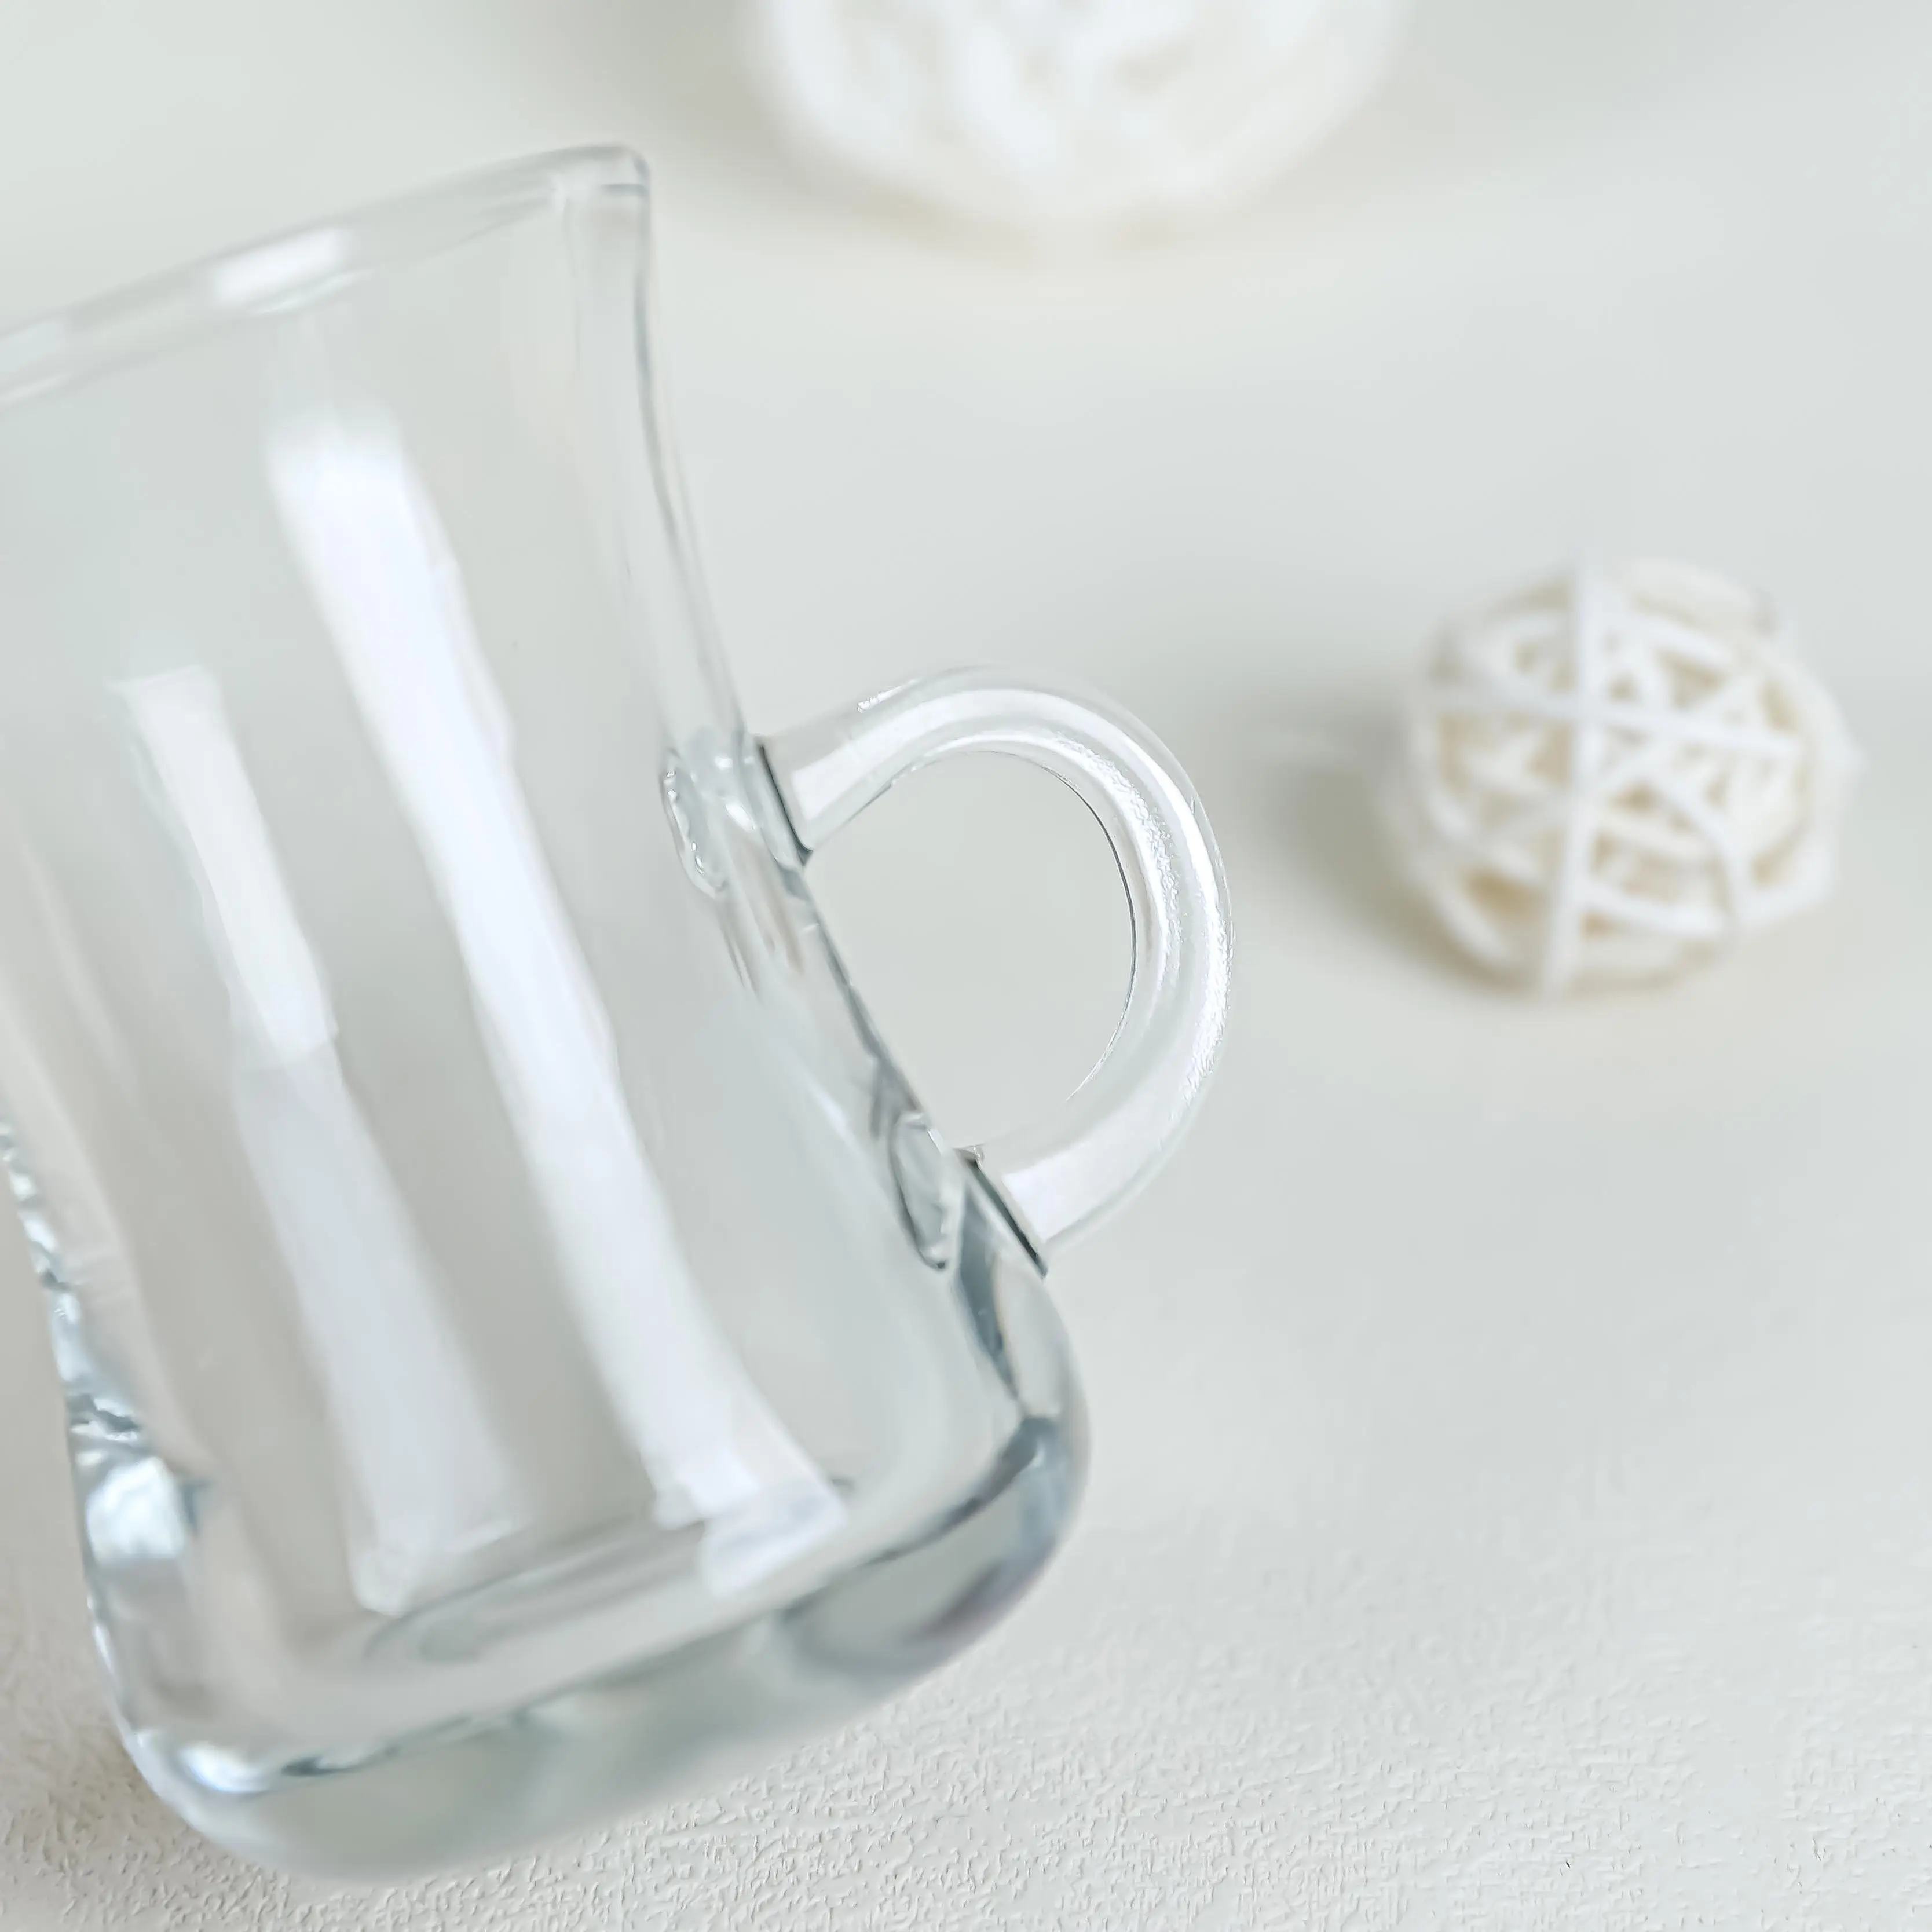 אמצע מזרח שוק פופולרי ערבית סגנון קטן זכוכית כוס עבור אדום תה תורכי שחור תה כוס